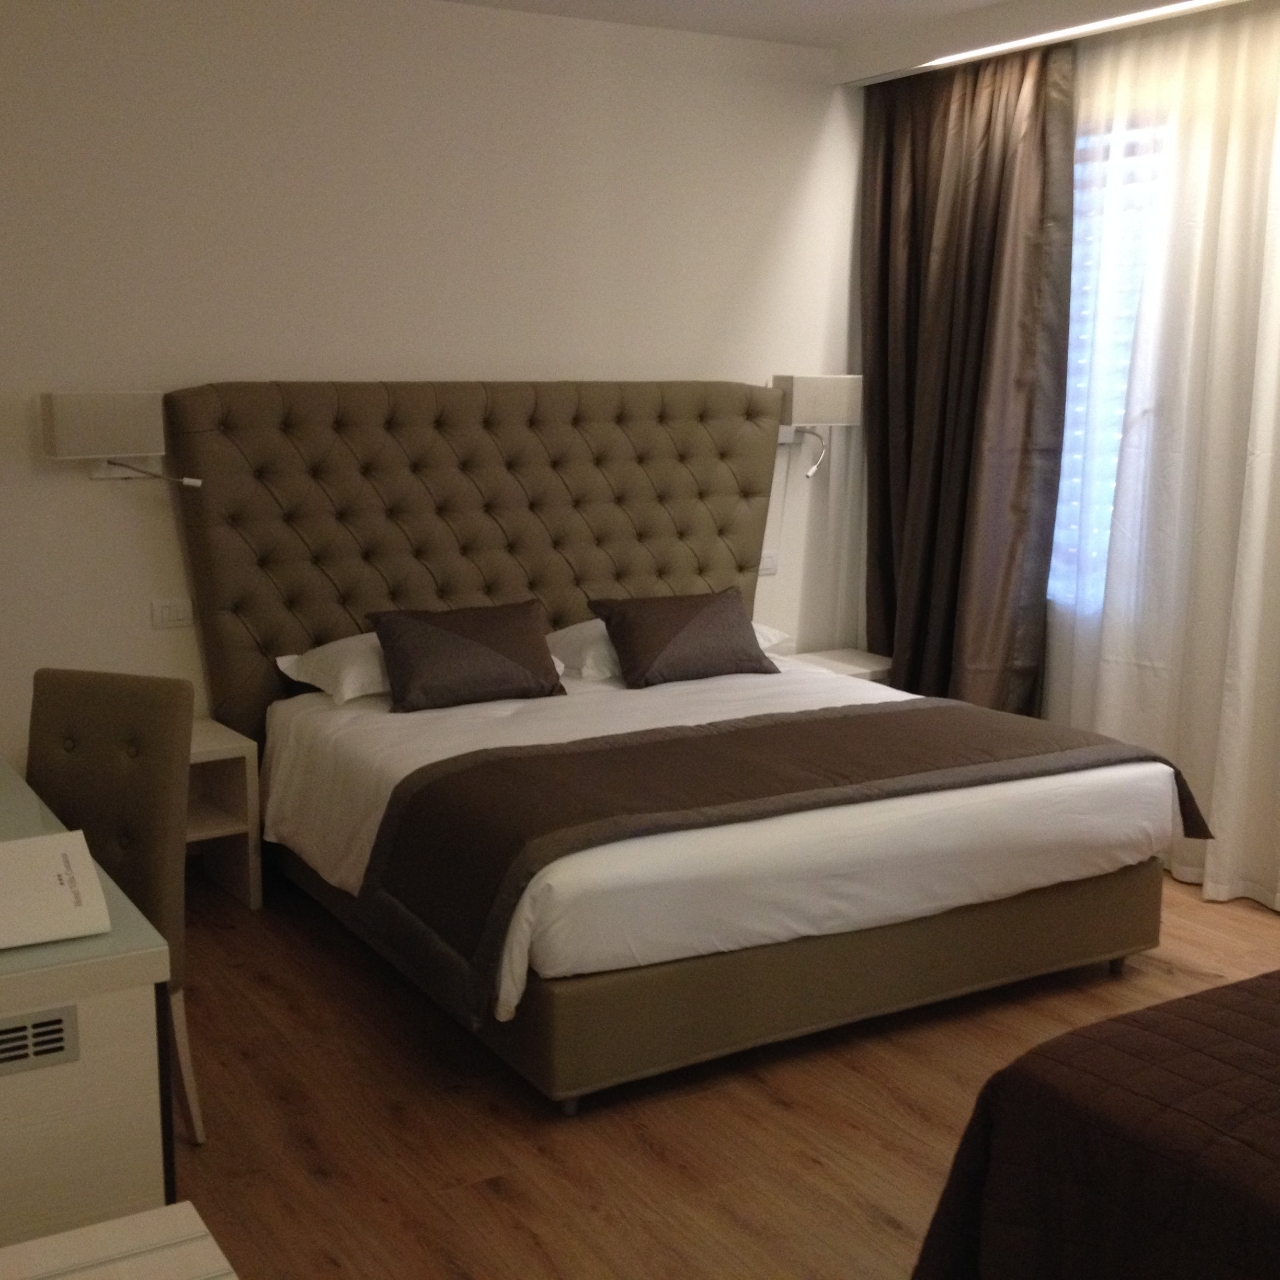 Hotel Villa Costanza Superior Rooms 3 Hrs Star Hotel In Mestre